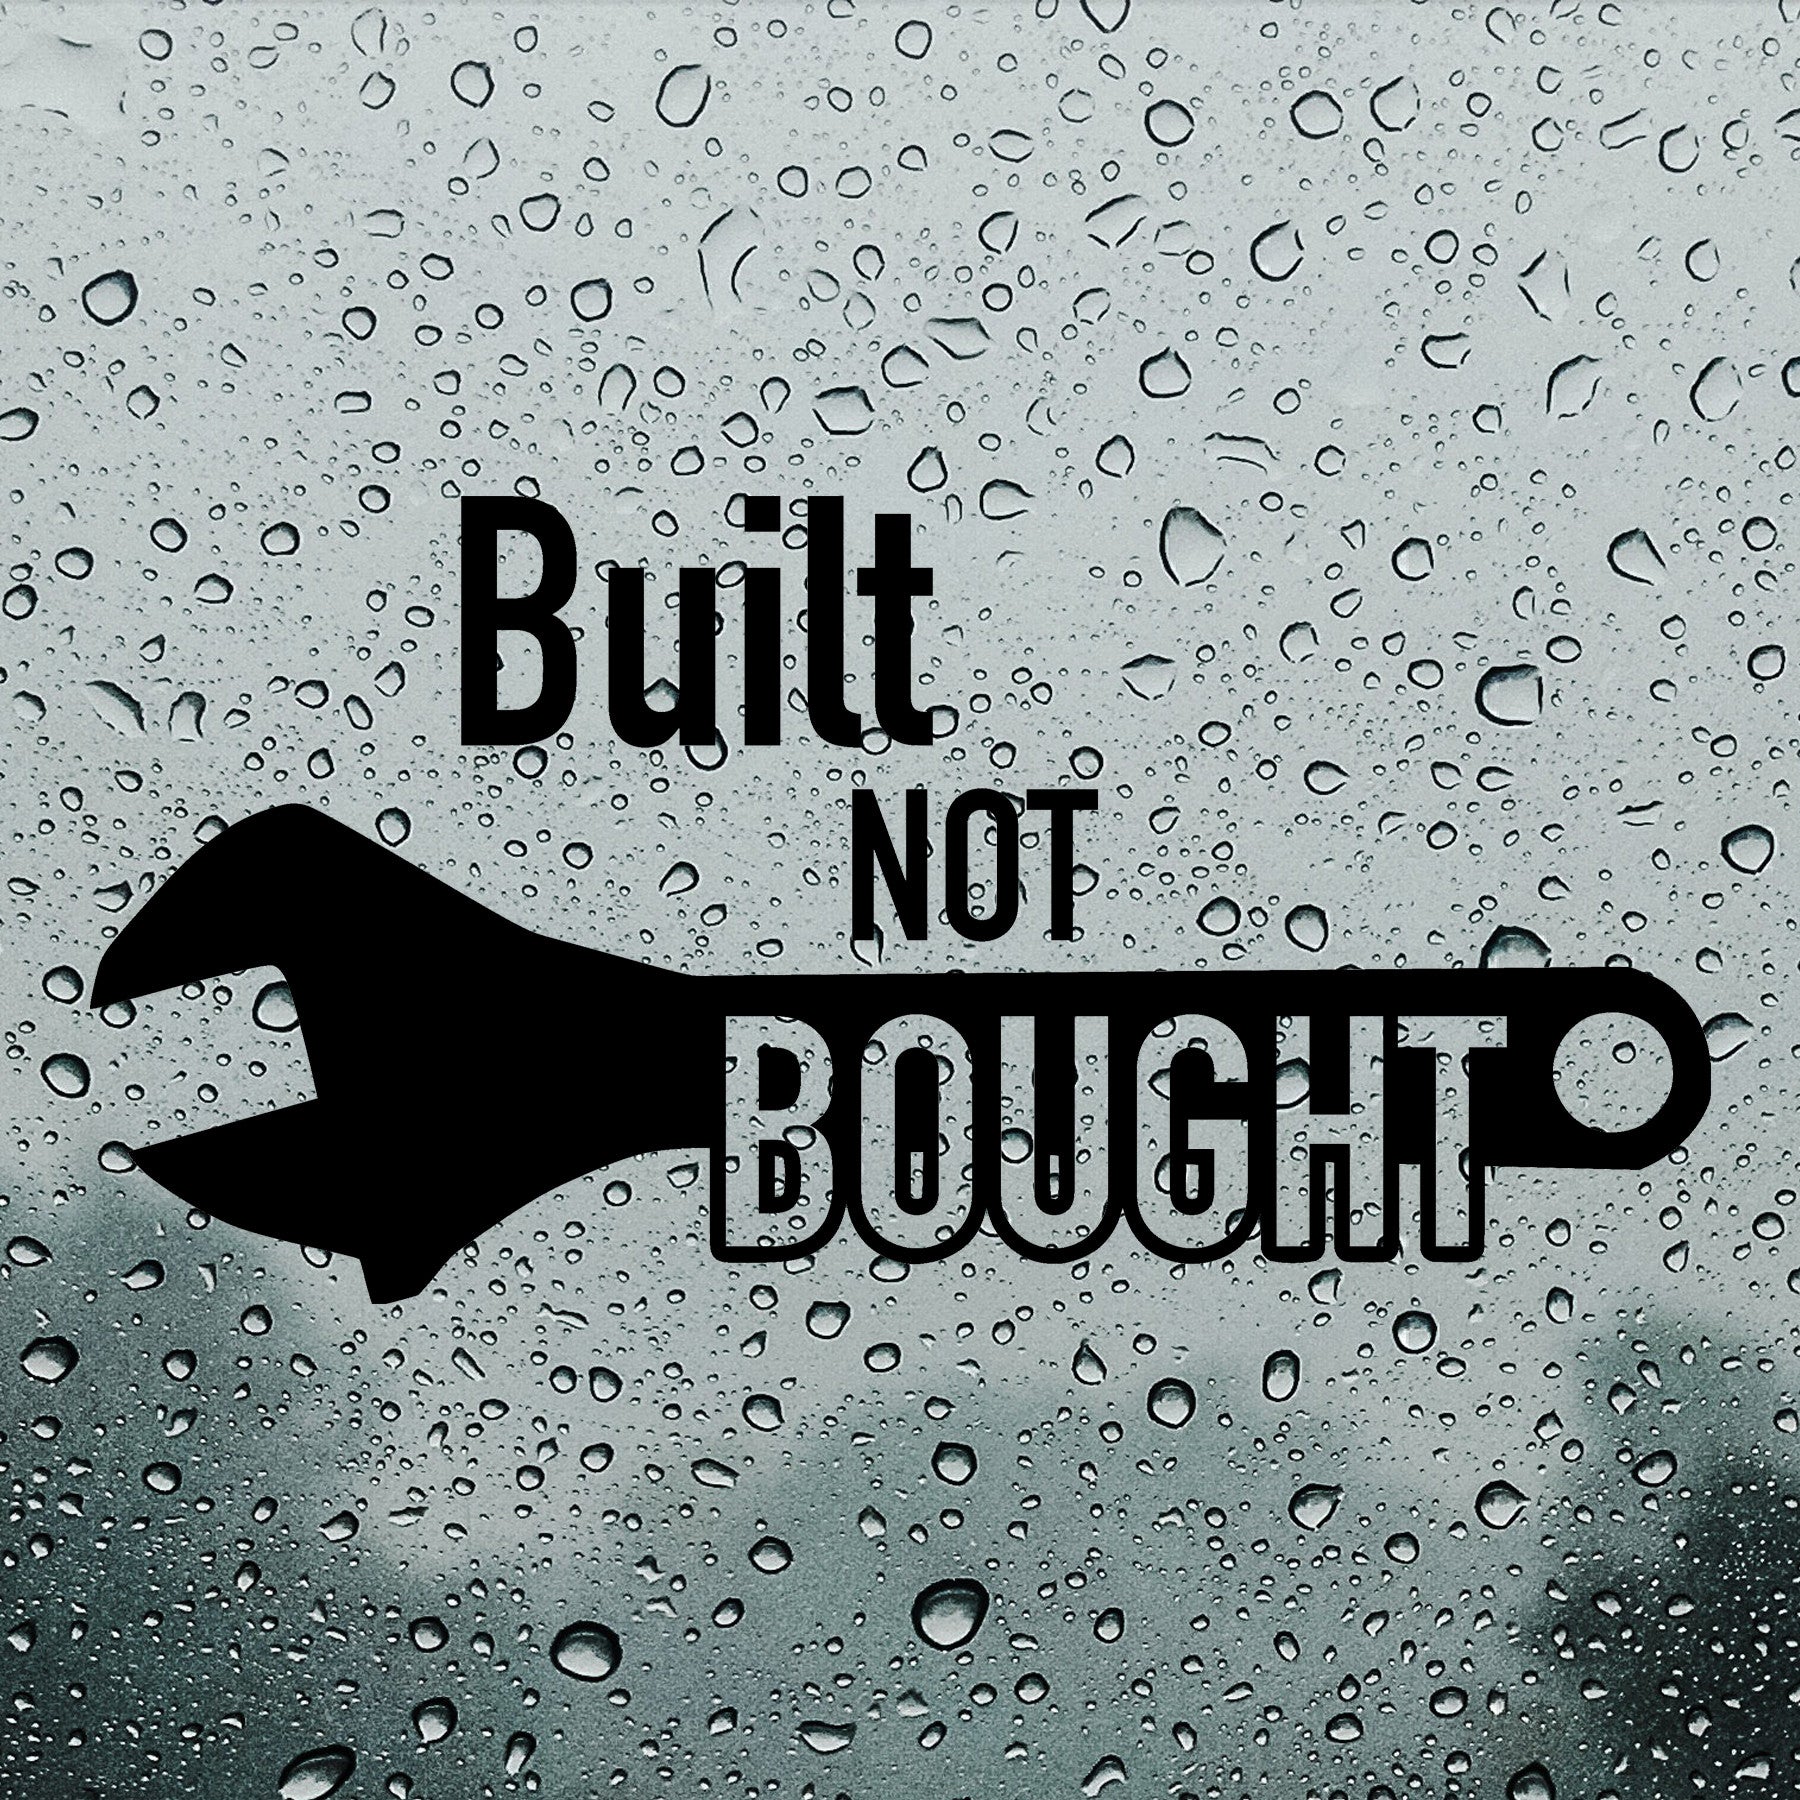 Built not bought | Bumper sticker - Adnil Creations